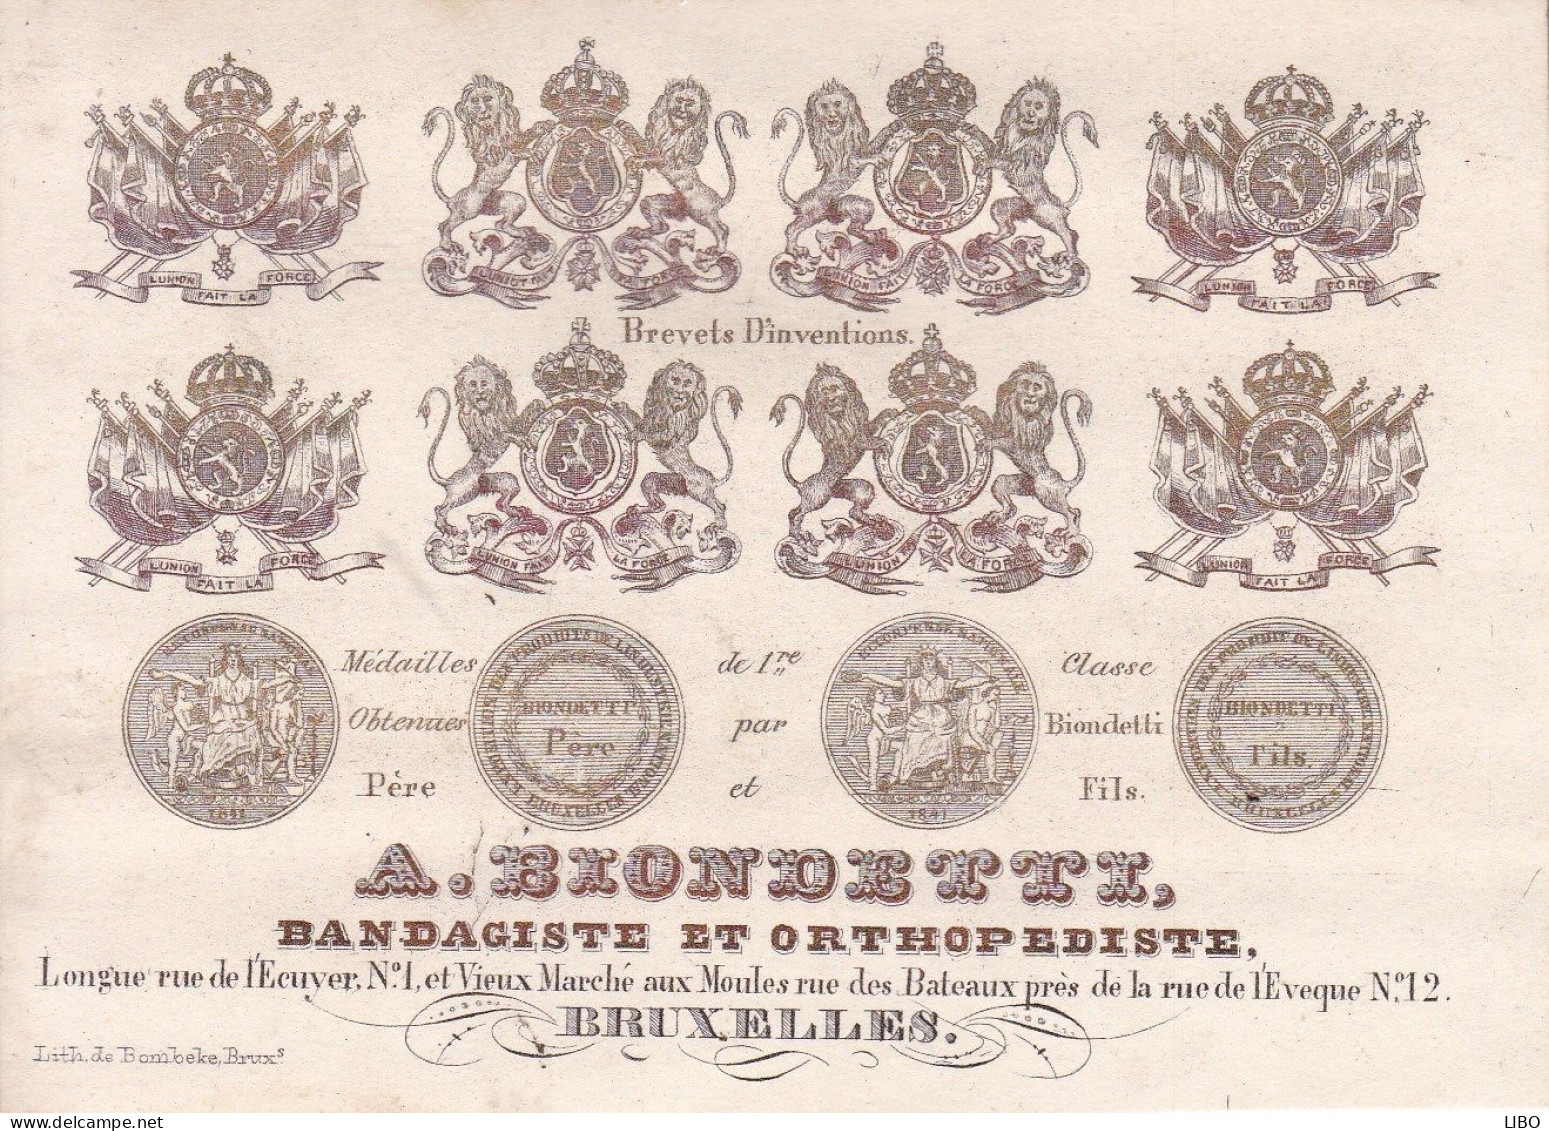 BRUXELLES BLONDETTZ Bandagiste Orthopédiste Vieux Marché Aux Moules Carte Porcelaine Années 1850-1860 - Porzellan